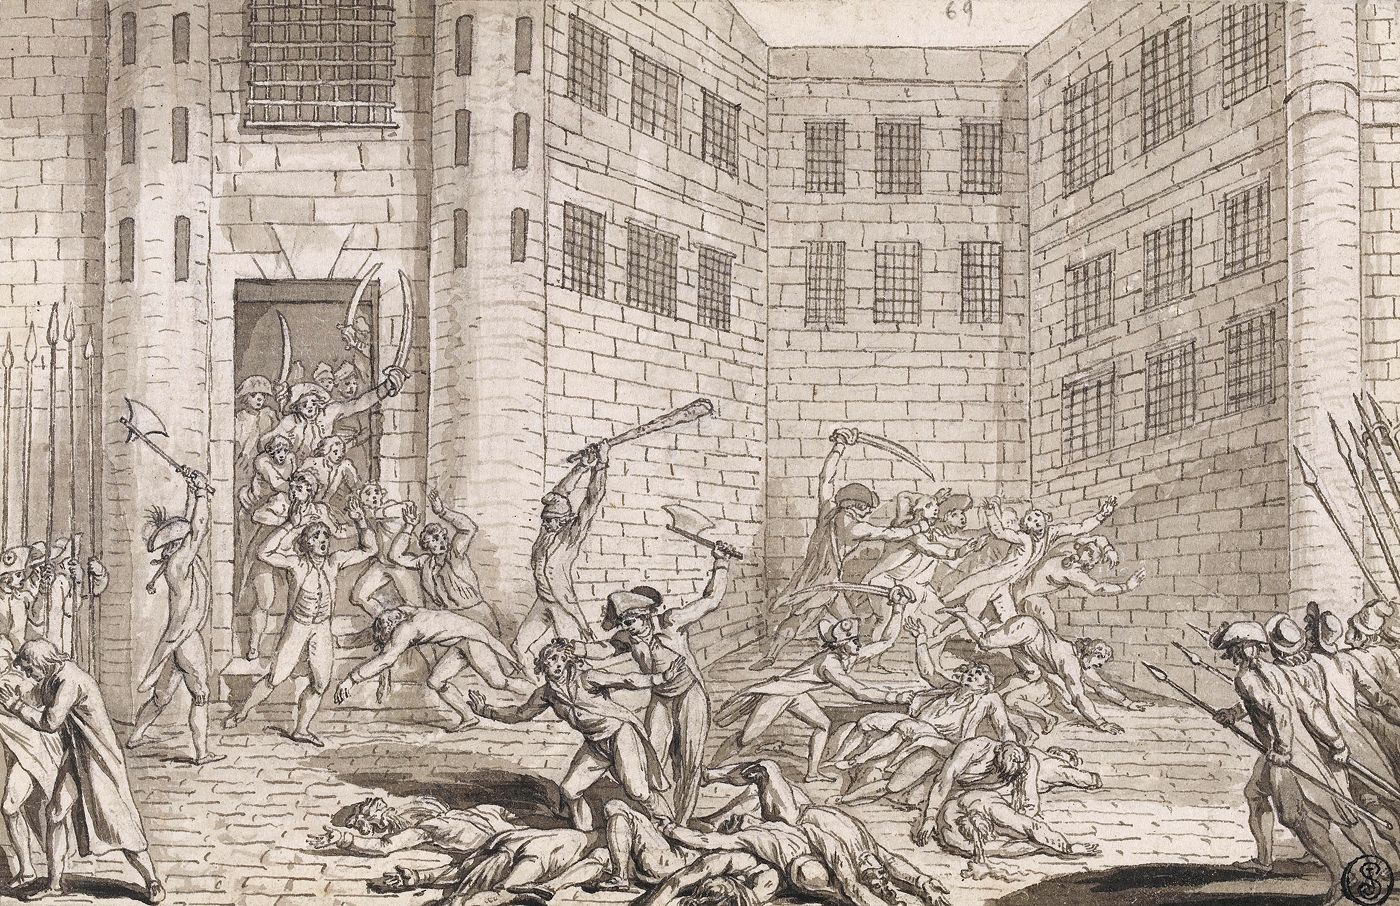 Massacre à l'abbaye de Saint-Germain-des-Prés, 2 septembre 1792.